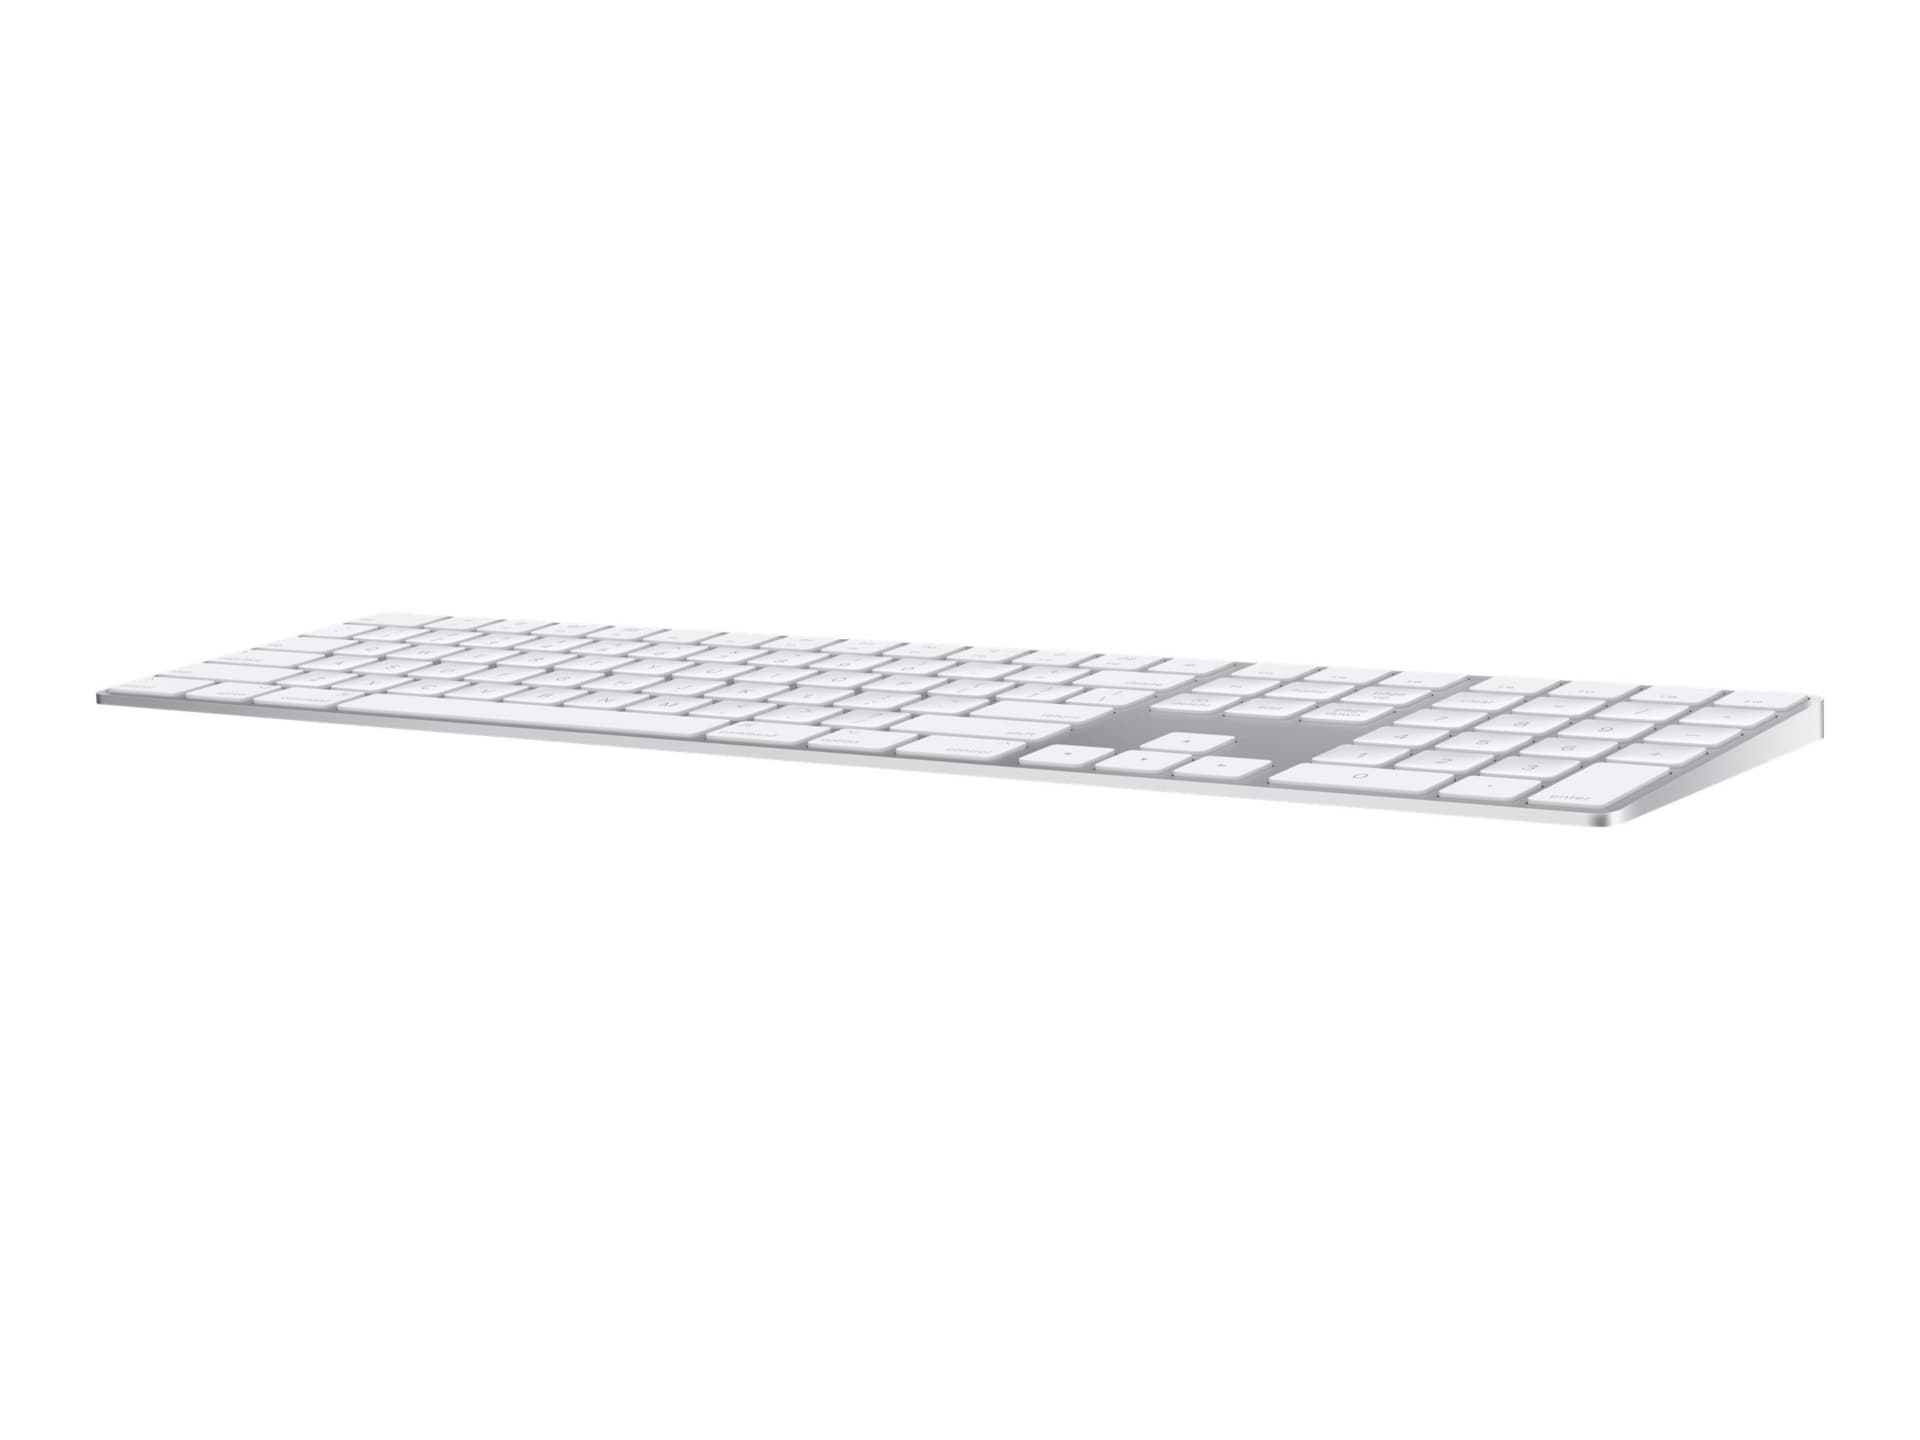 Apple Magic Keyboard with Numeric Keypad - keyboard - US - silver - MQ052LL/A - Keyboards - CDW.com